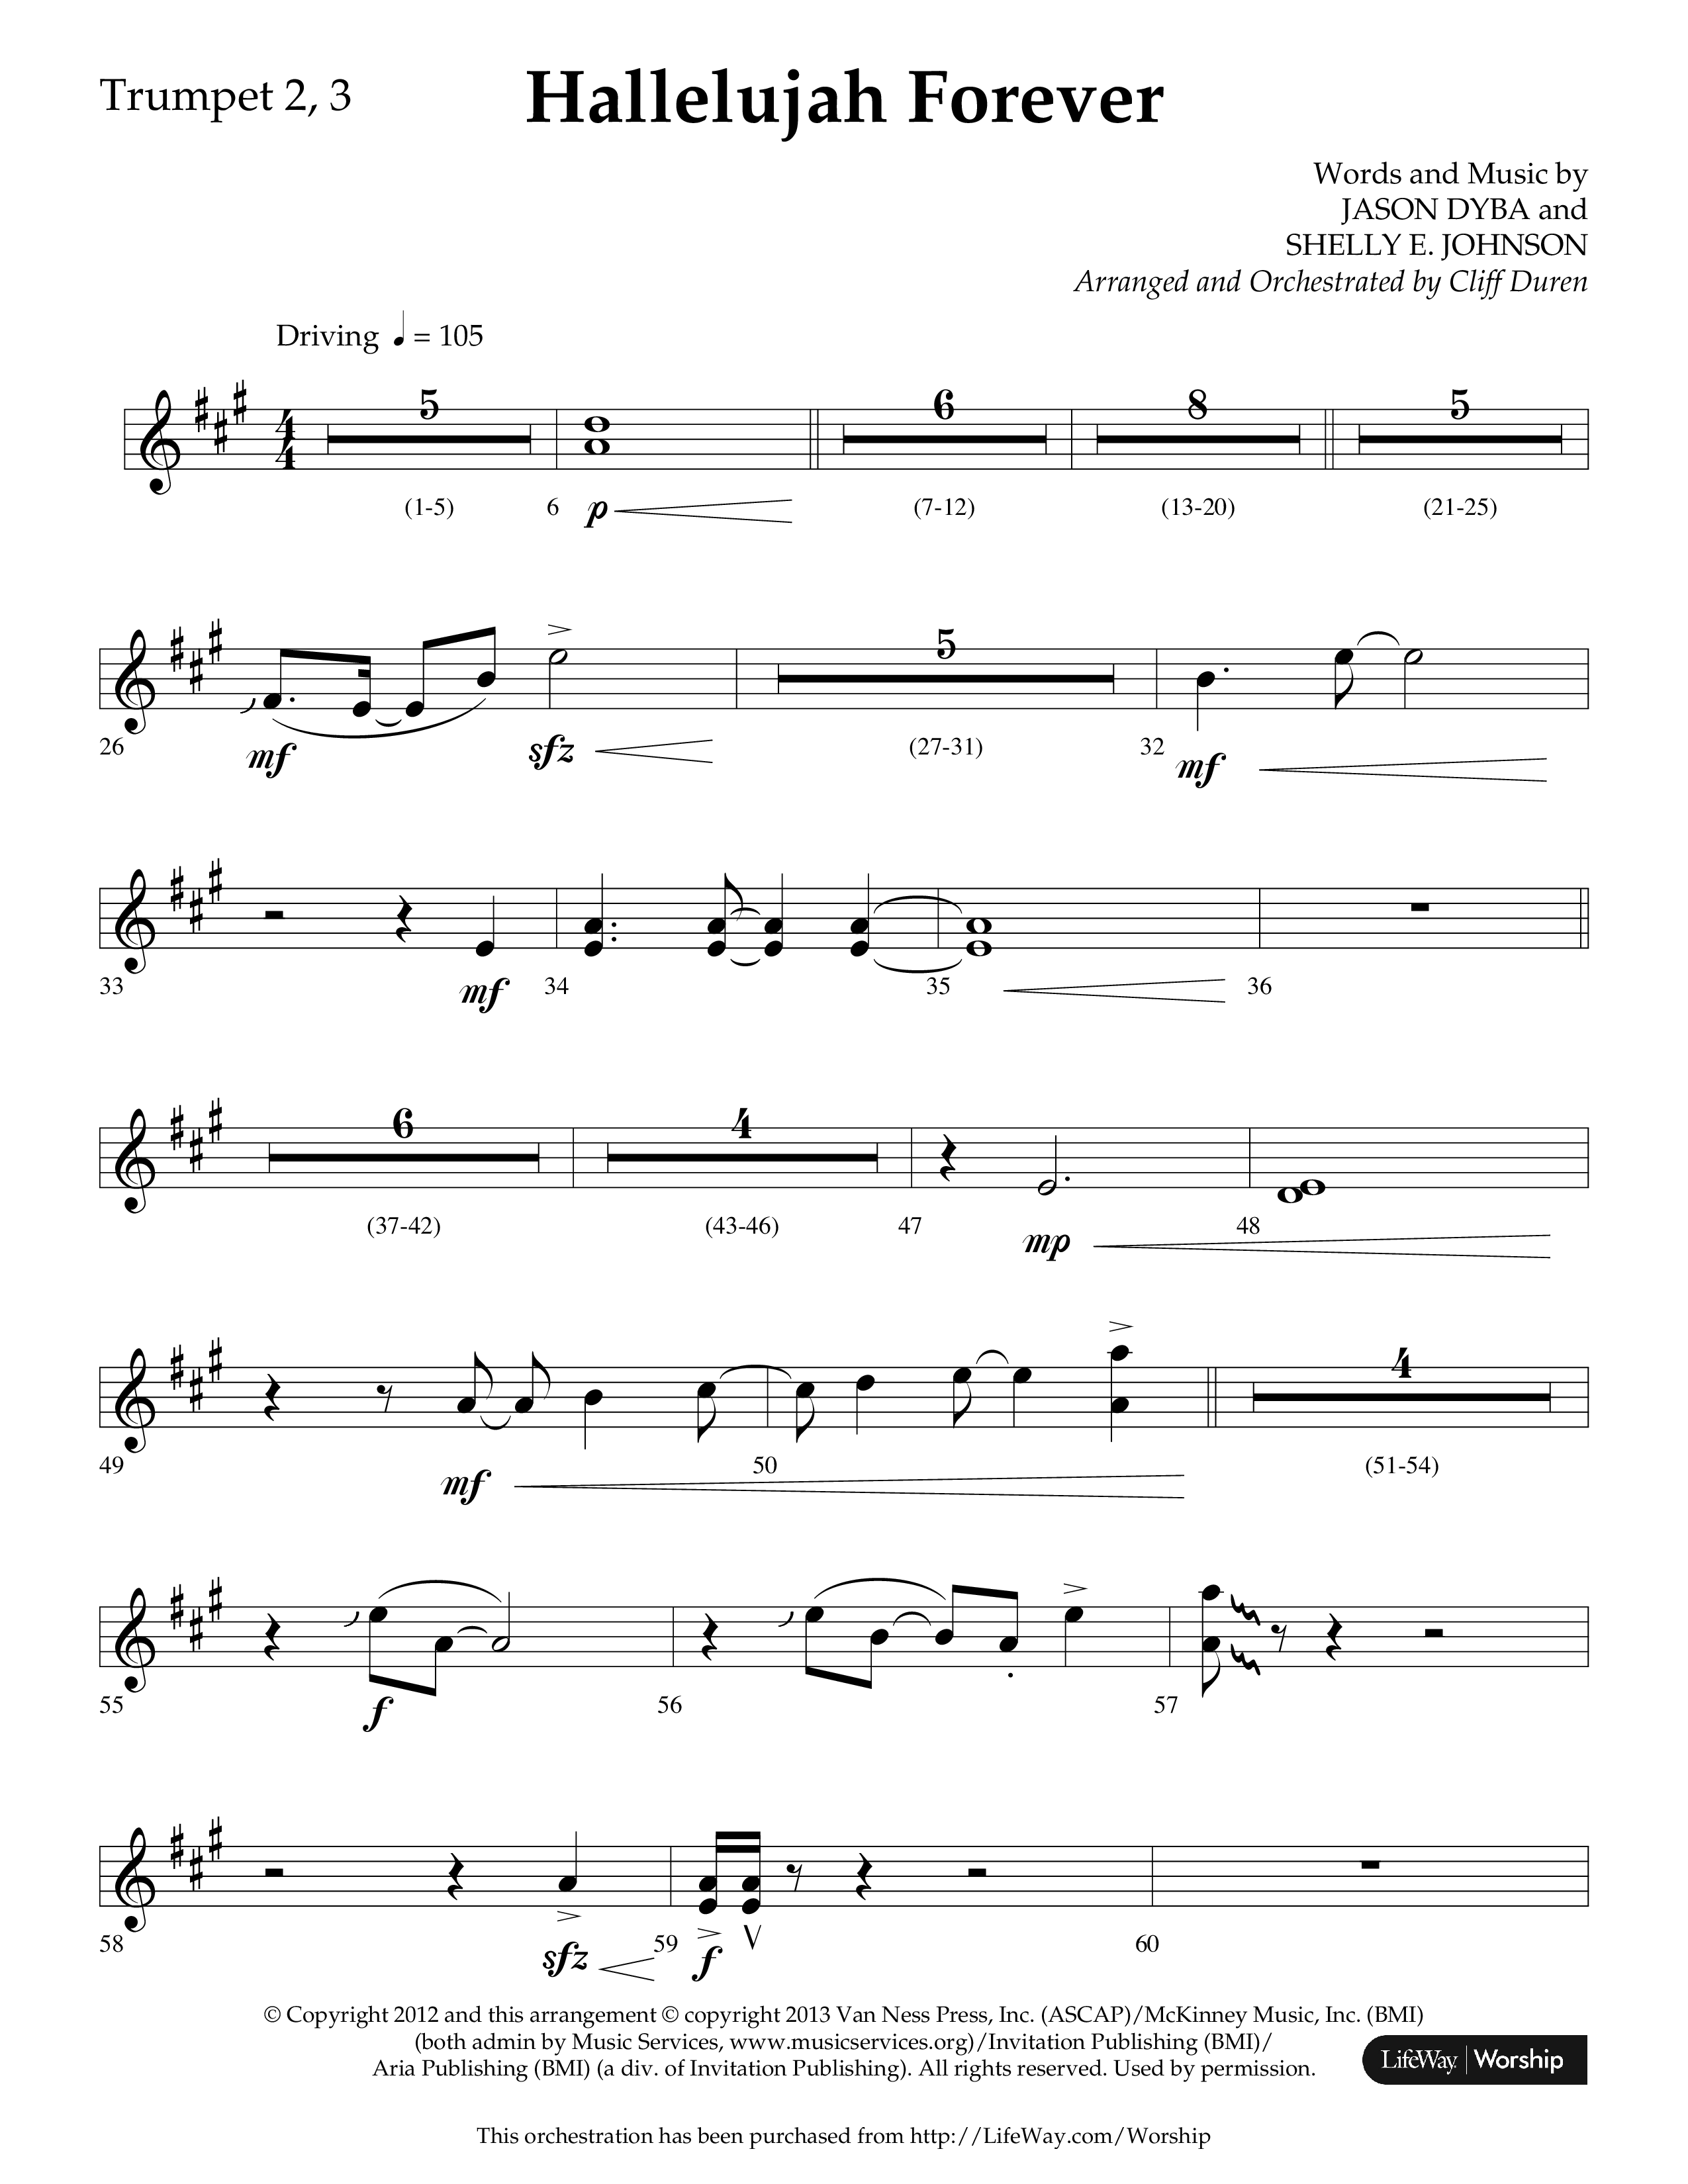 Hallelujah Forever (Choral Anthem SATB) Trumpet 2/3 (Lifeway Choral / Arr. Cliff Duren)